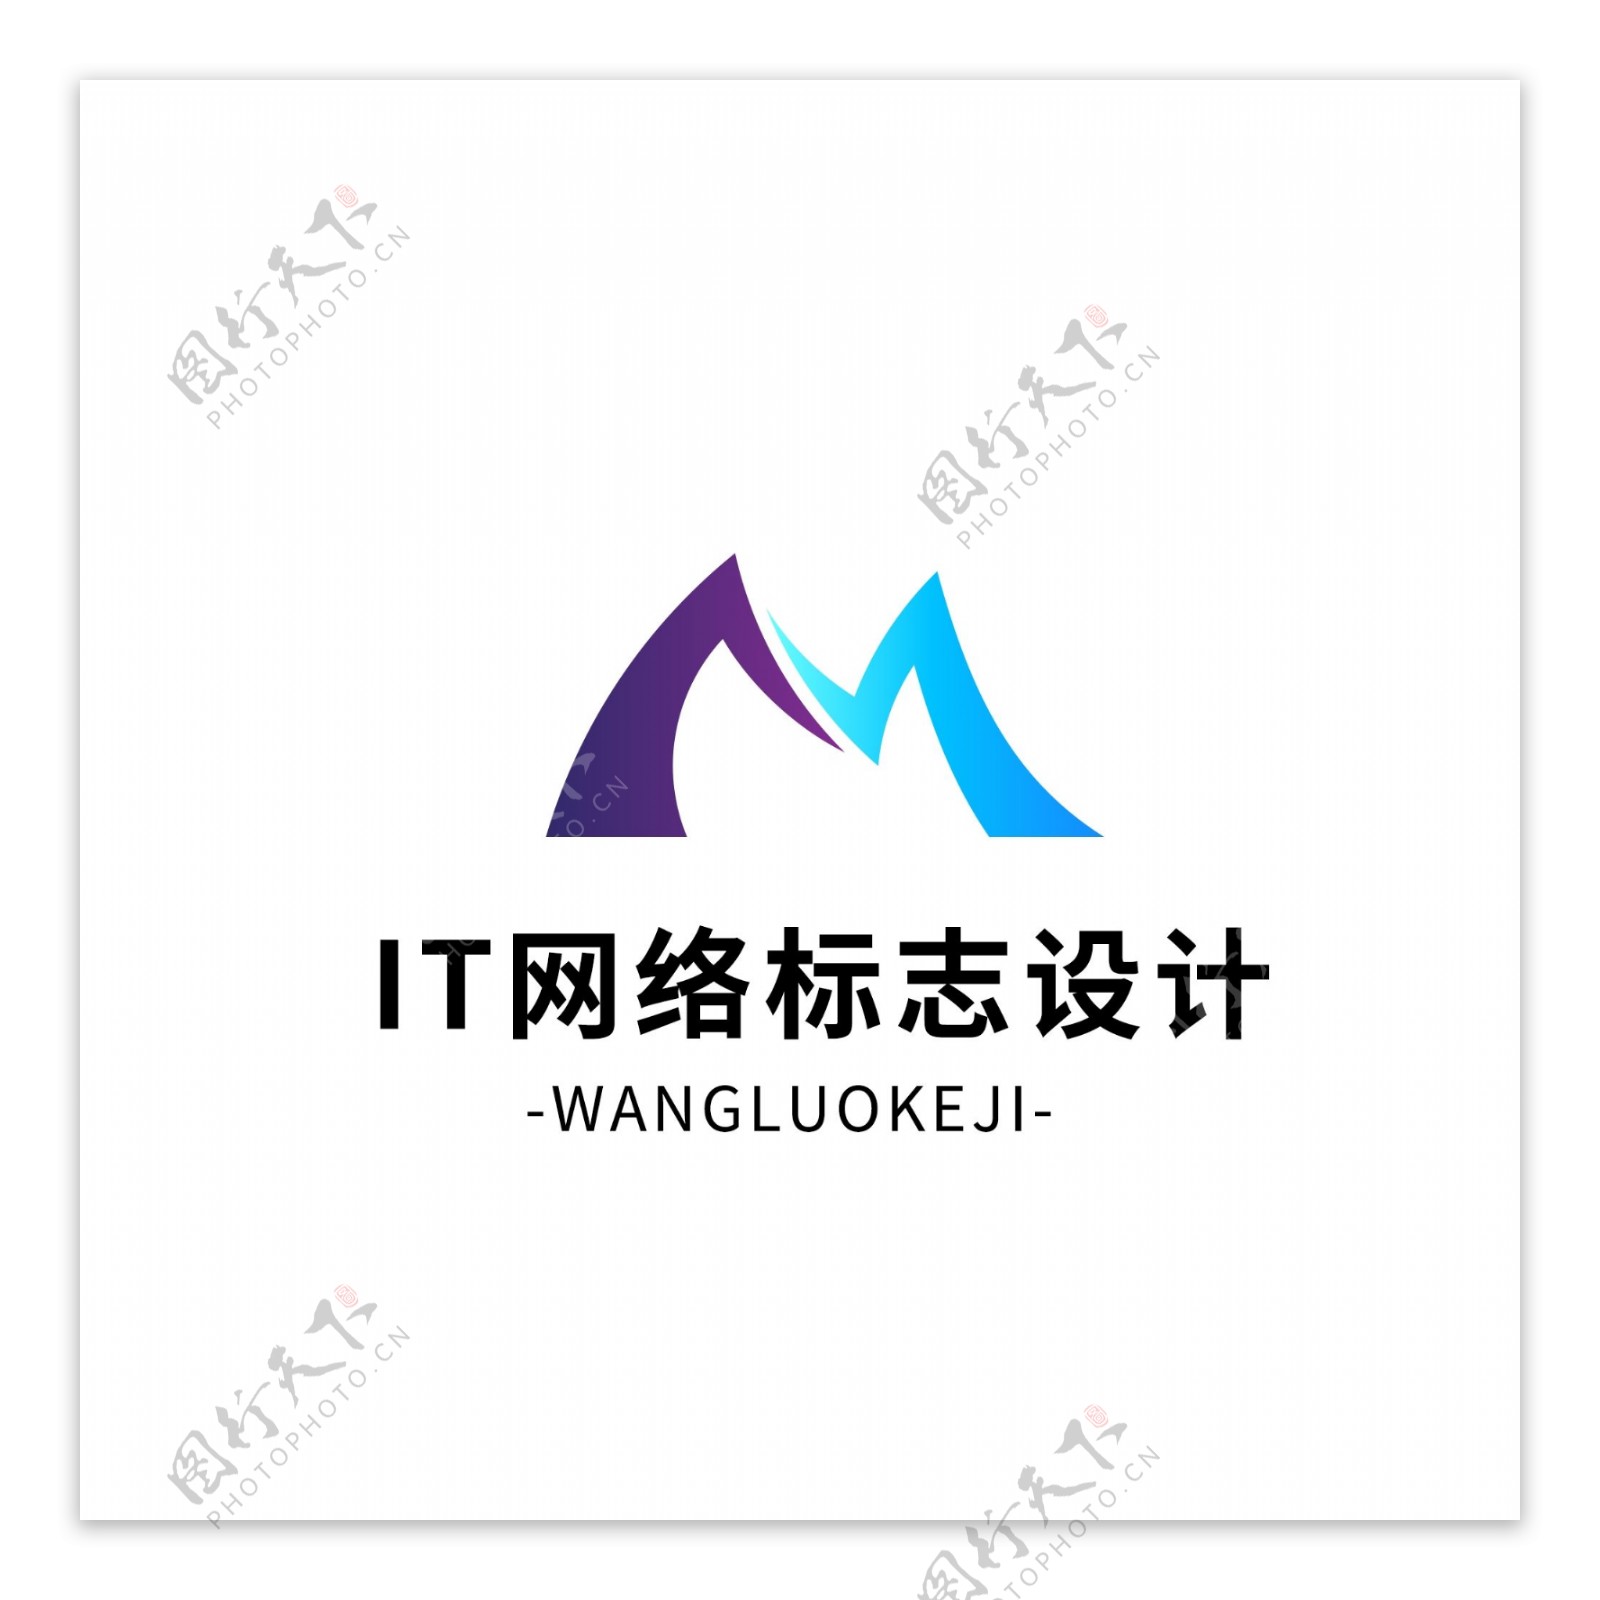 IT网络标志设计logo设计